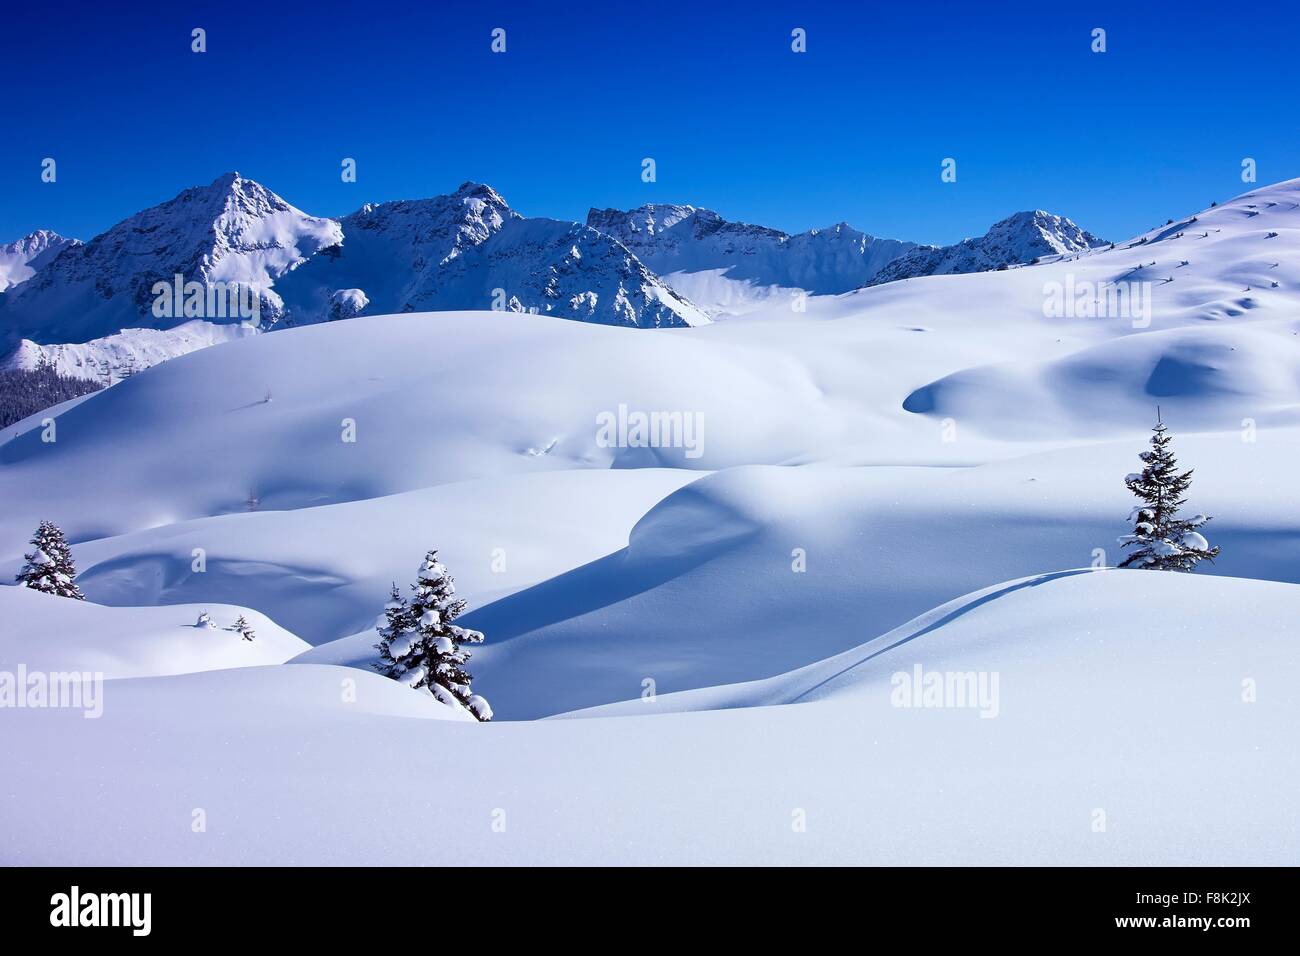 El paisaje cubierto de nieve profunda y abetos, Arosa, Suiza Foto de stock